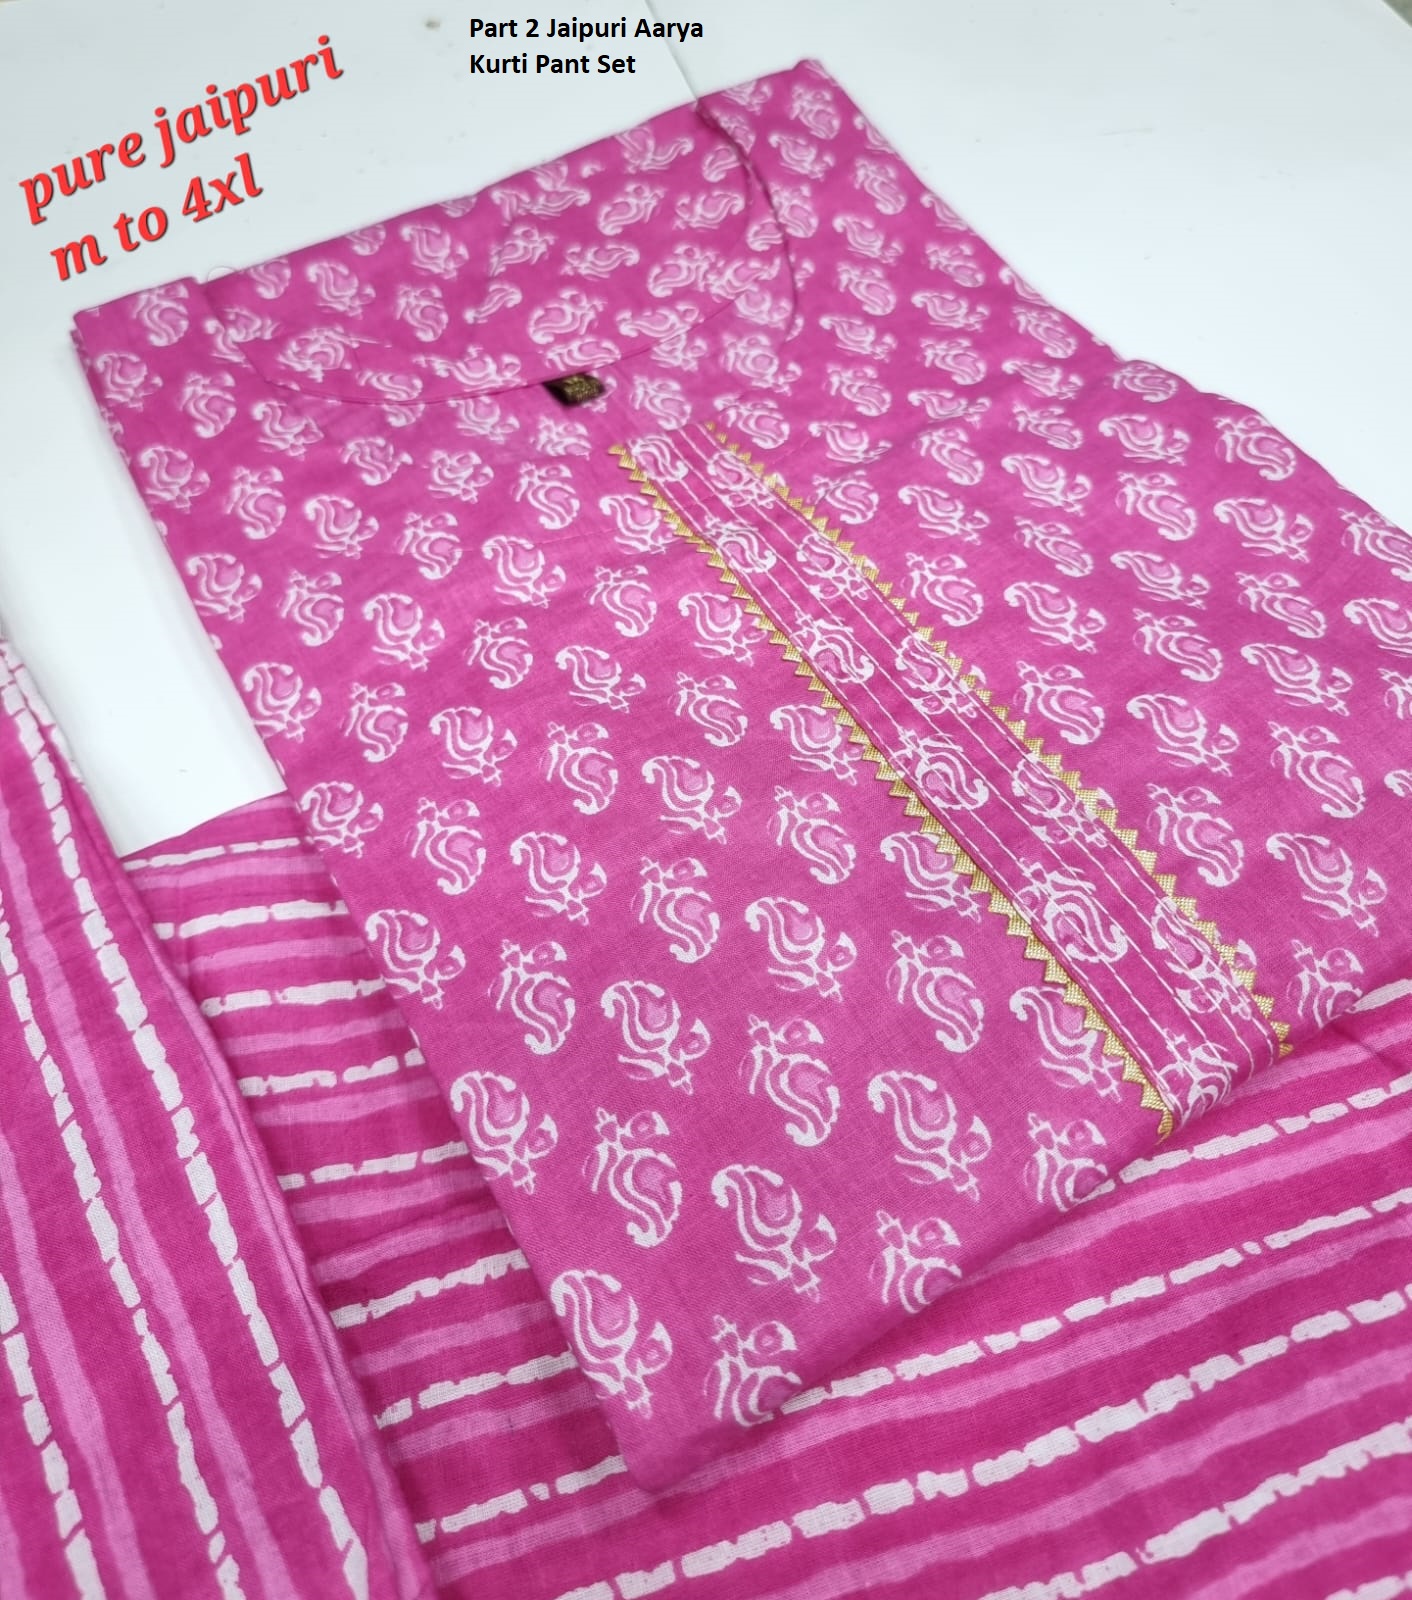 Aarya Part 2 Jaipuri Designer Kurtis Pant Set Catalog Lowest Price